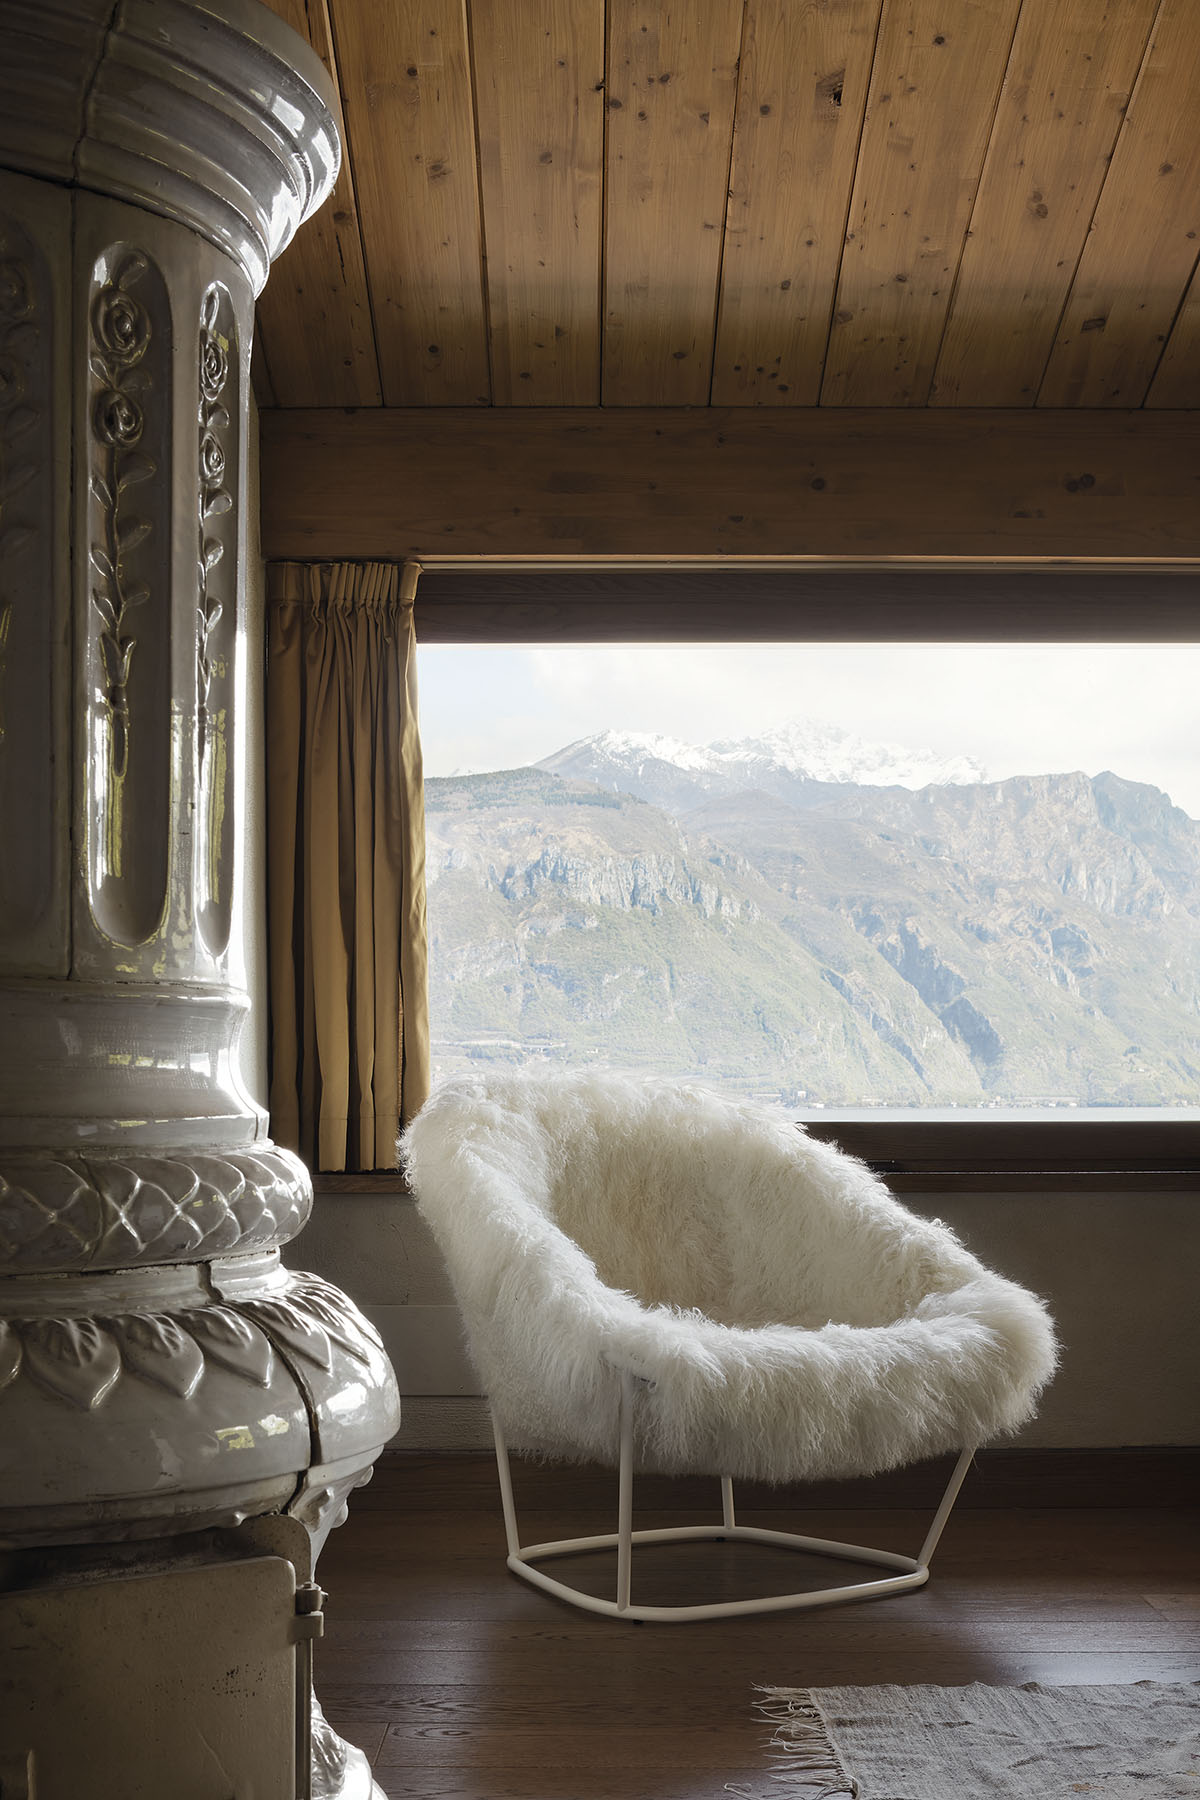 arflex-Katrin-armchair-design-Carlo-Colombo-fur-backrest-high-living-hospitality-project-luxury-madeinitaly-modern-contemporary